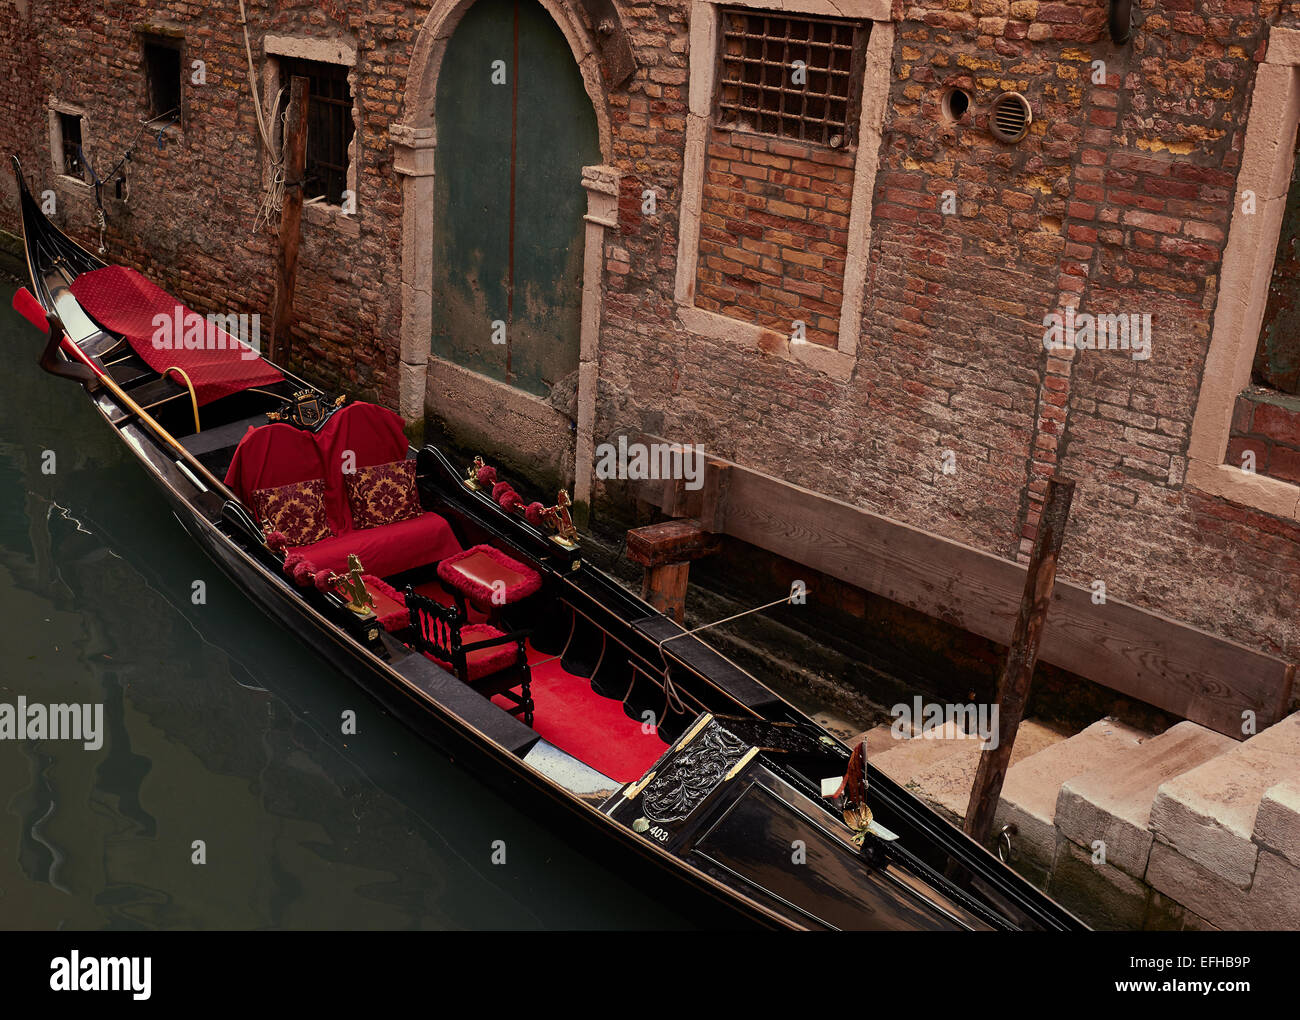 Rouge décoration intérieur de la gondole de Venise par des marches Vénétie Italie Europe Banque D'Images